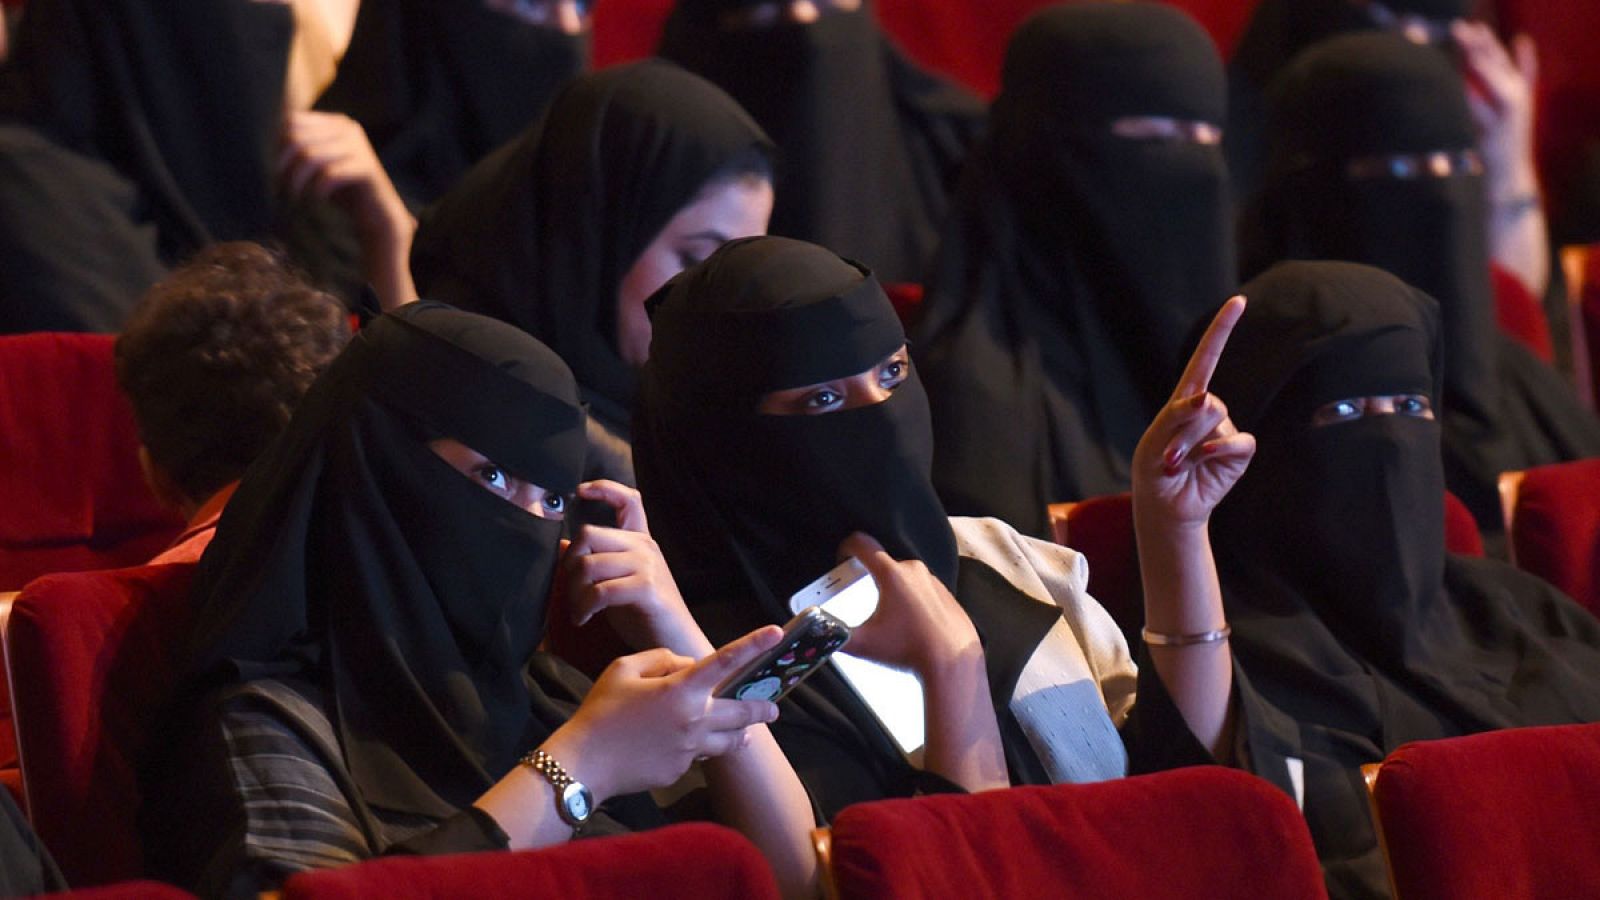 Arabia Saudí autorizará la apertura de los primeros cines en 2018, después de 35 años